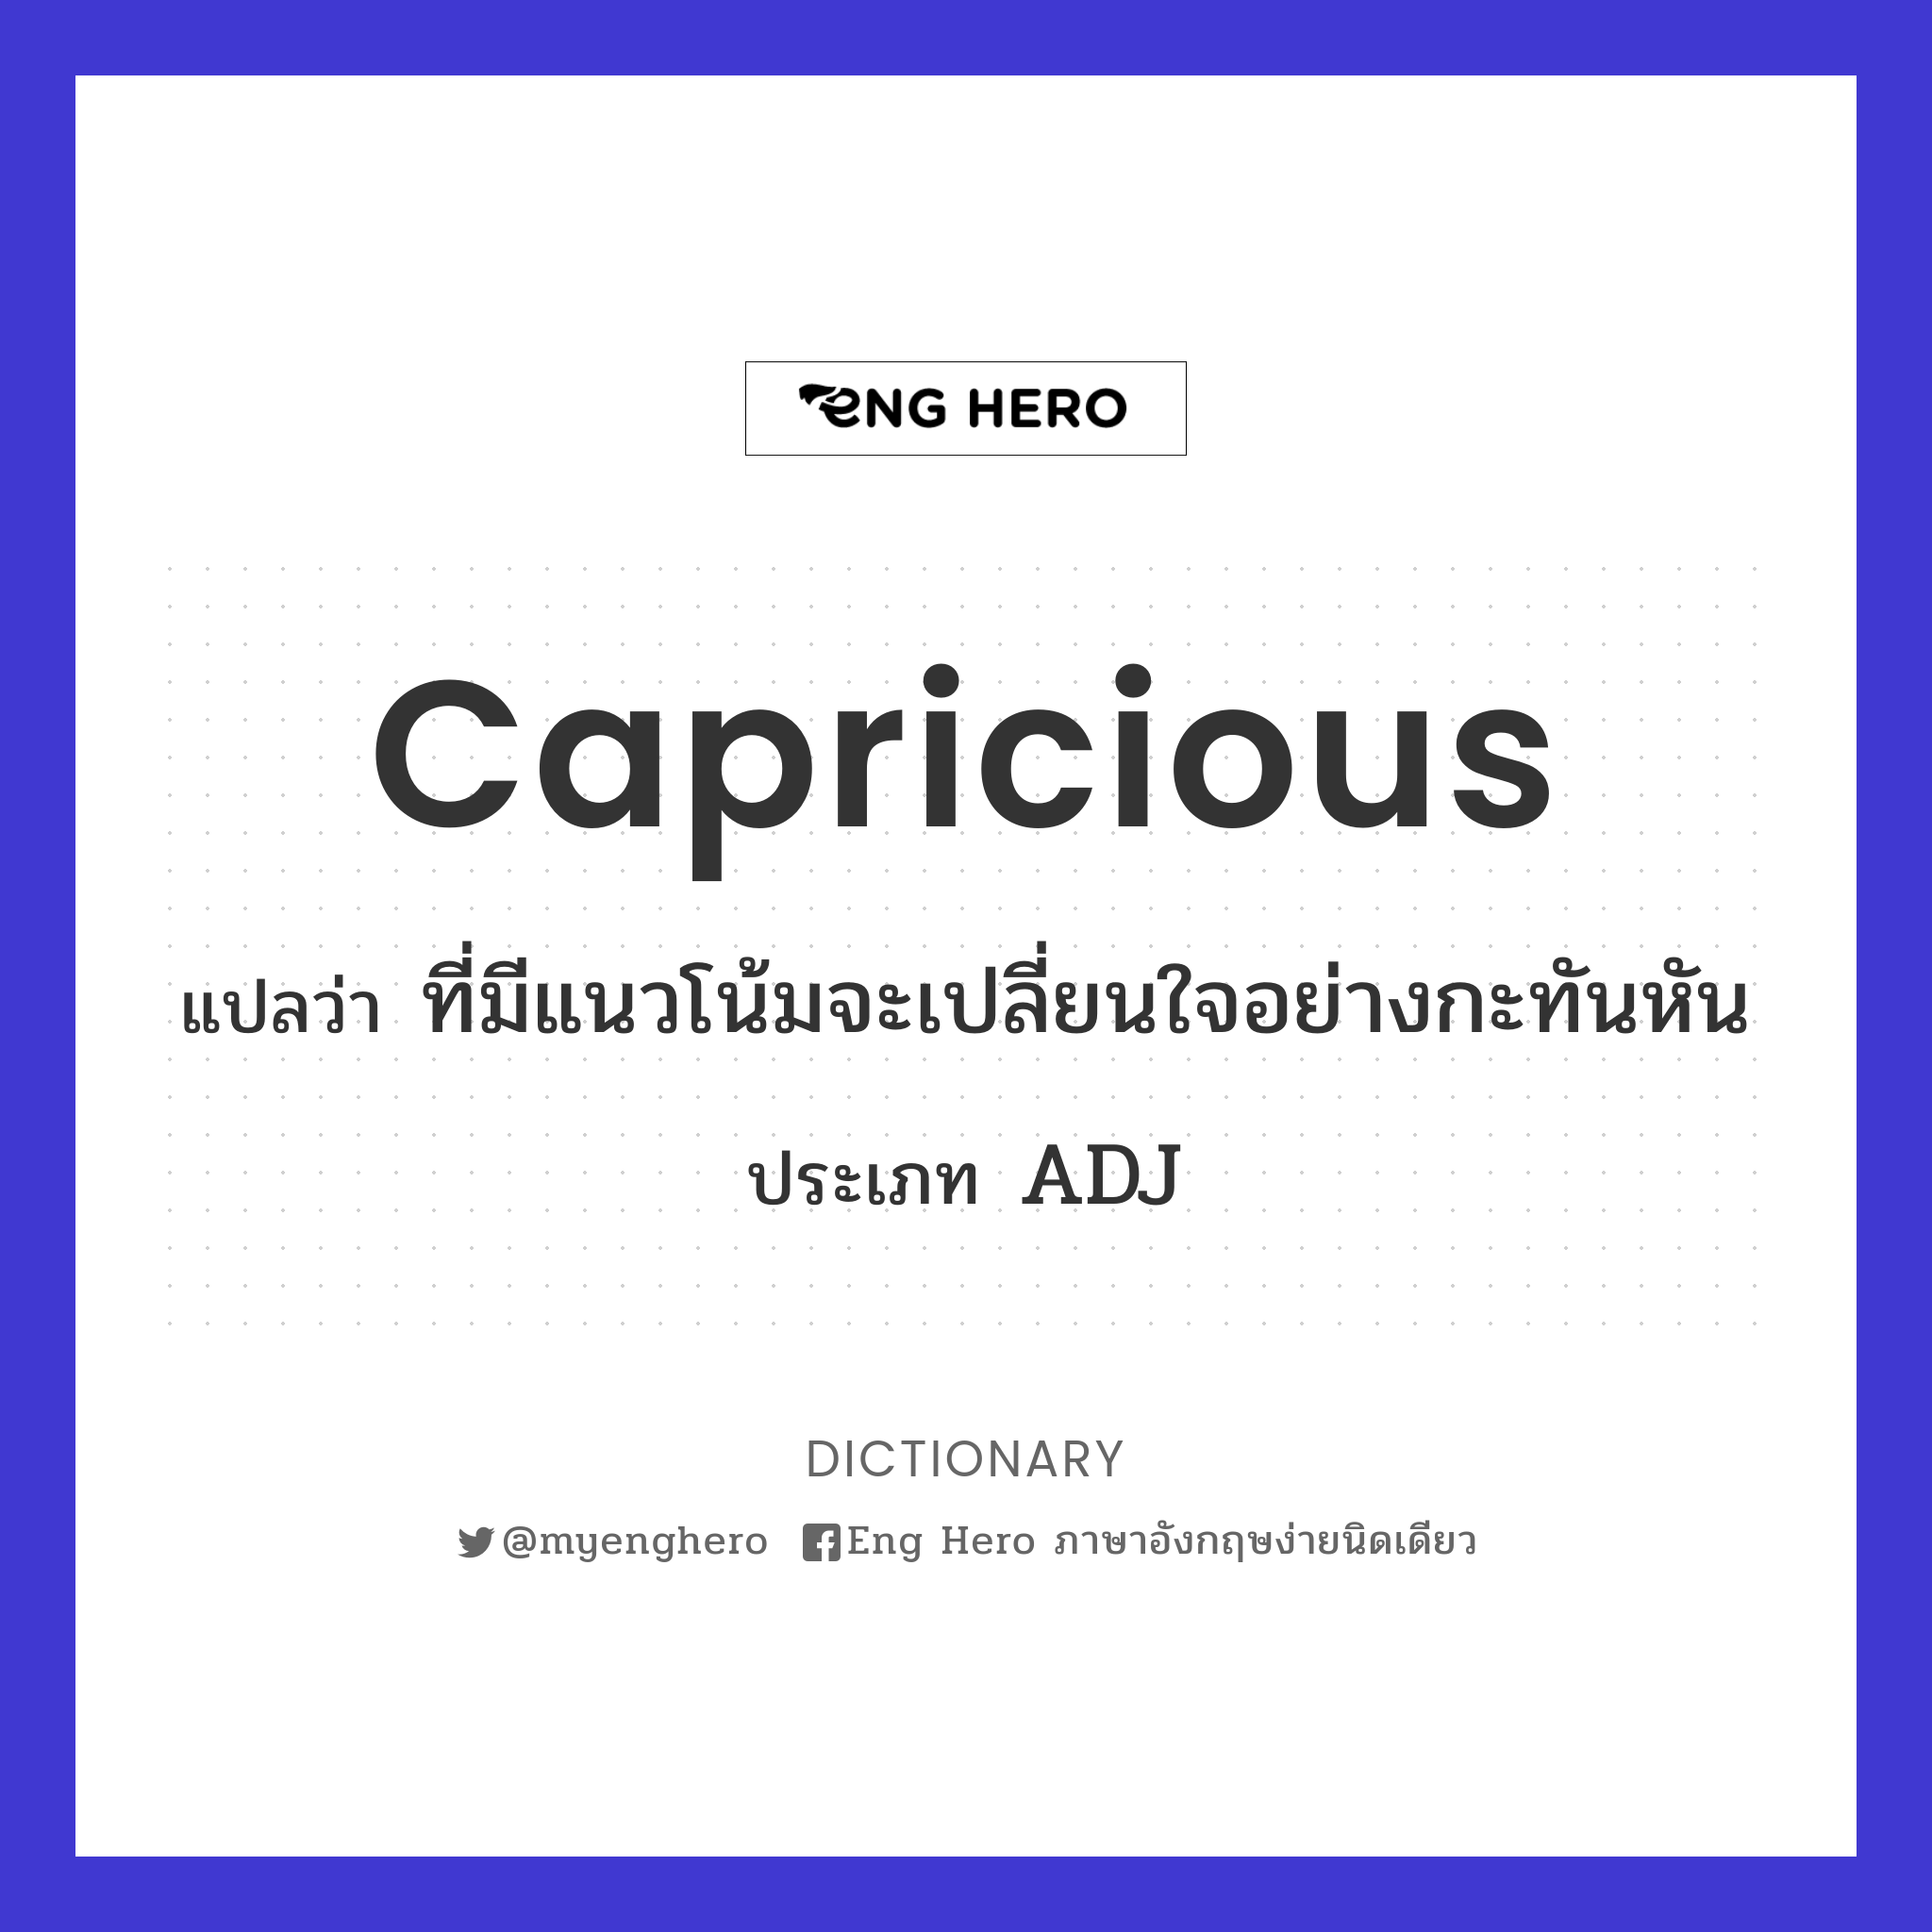 capricious